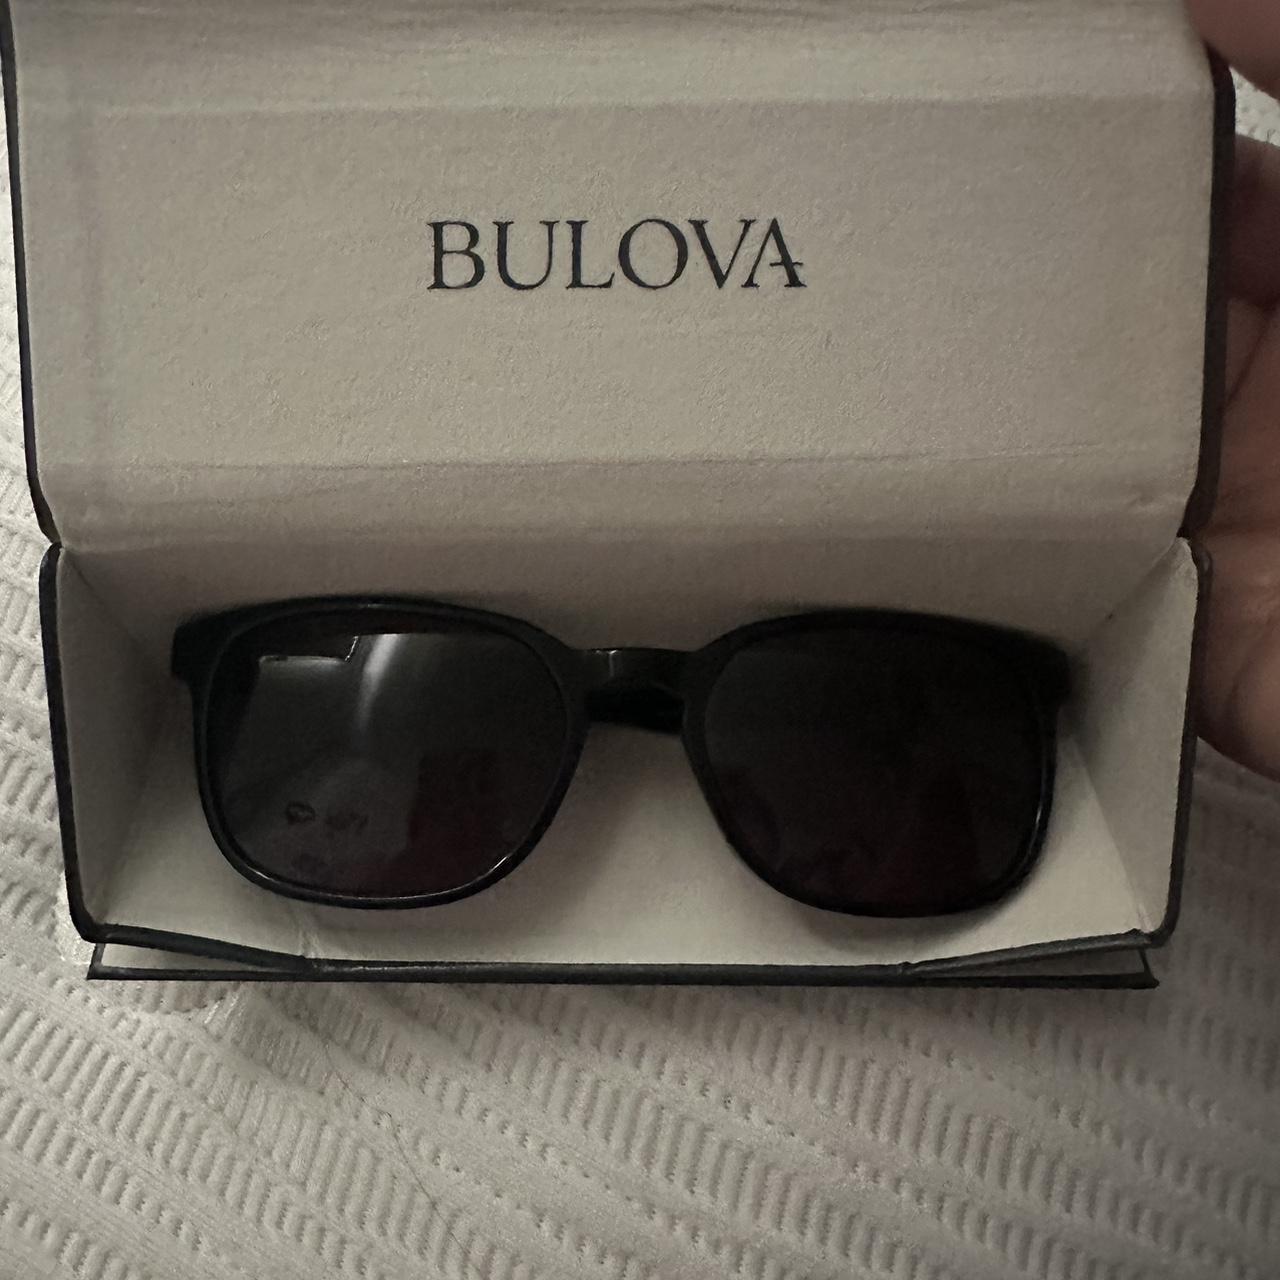 Bulova Sunglasses Coronado Shiny Black and 50 similar items